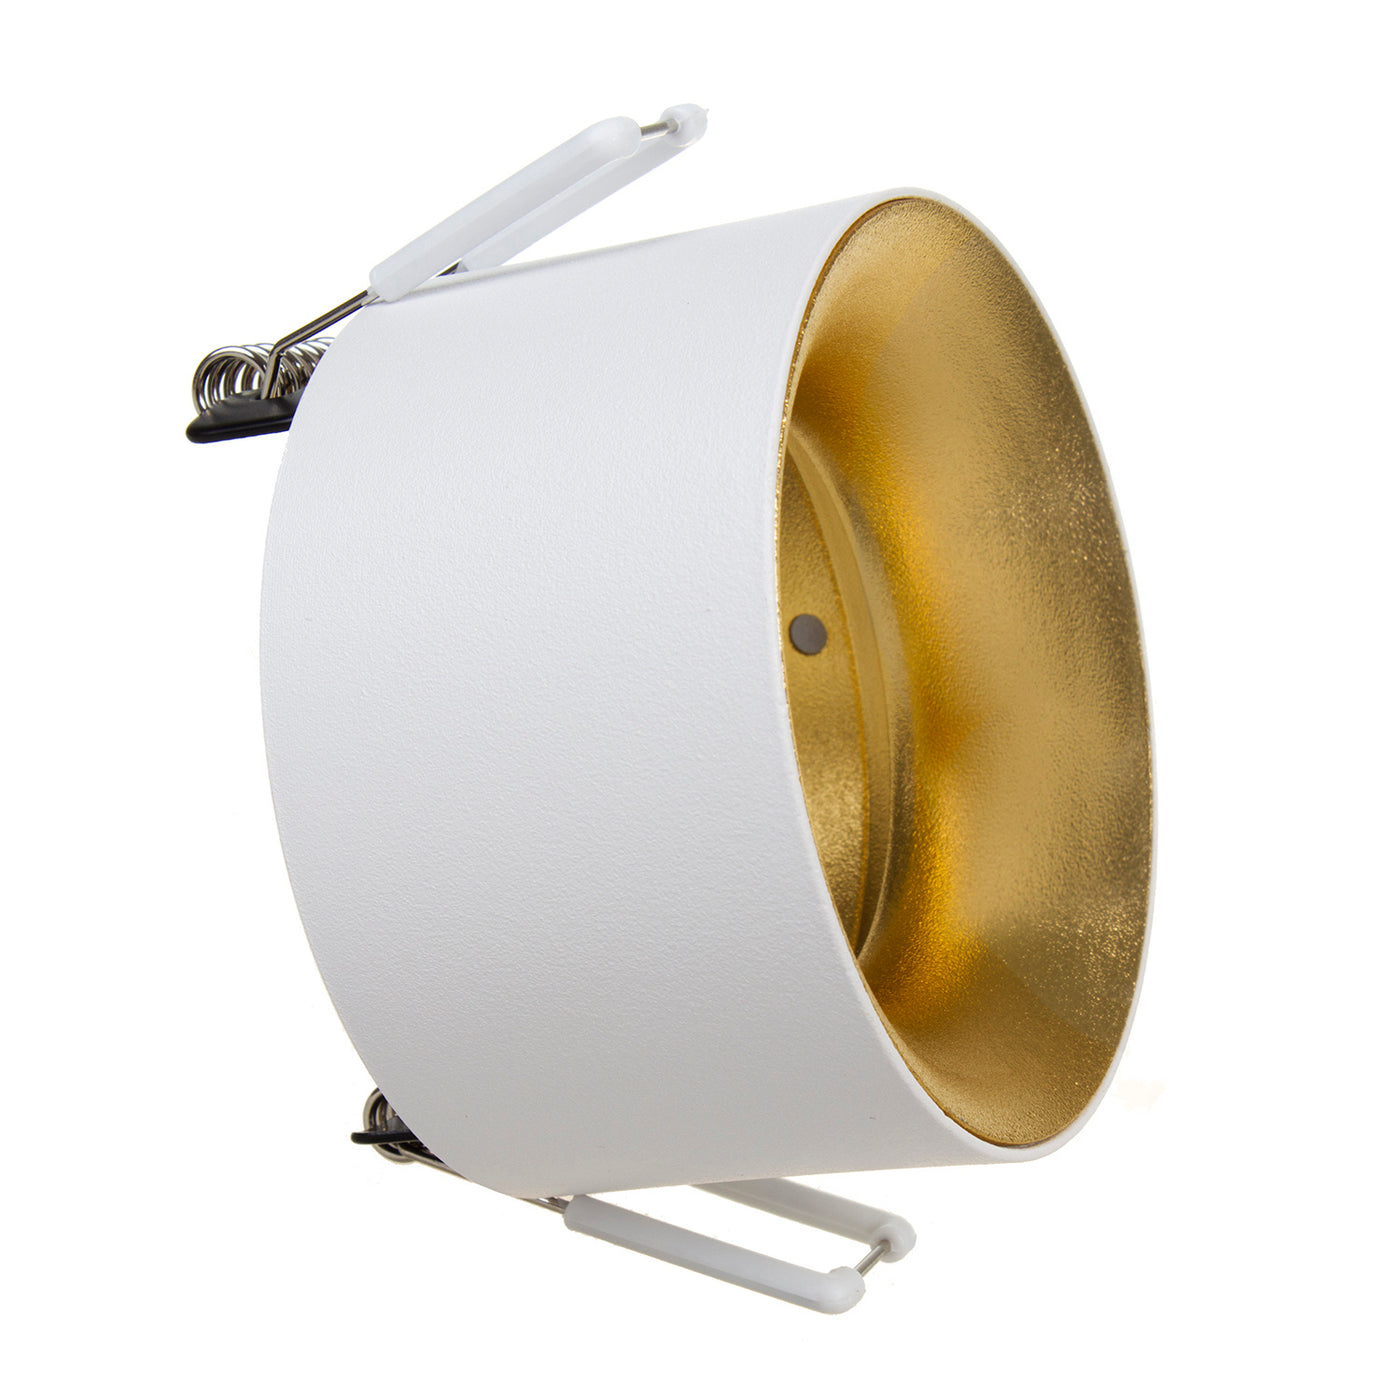 Oprawa podtynkowa / tuba Maclean, punktowa, okrągła, aluminiowa, GU5.3, 70x40mm, kolor biały/złoty, MCE457 W/G